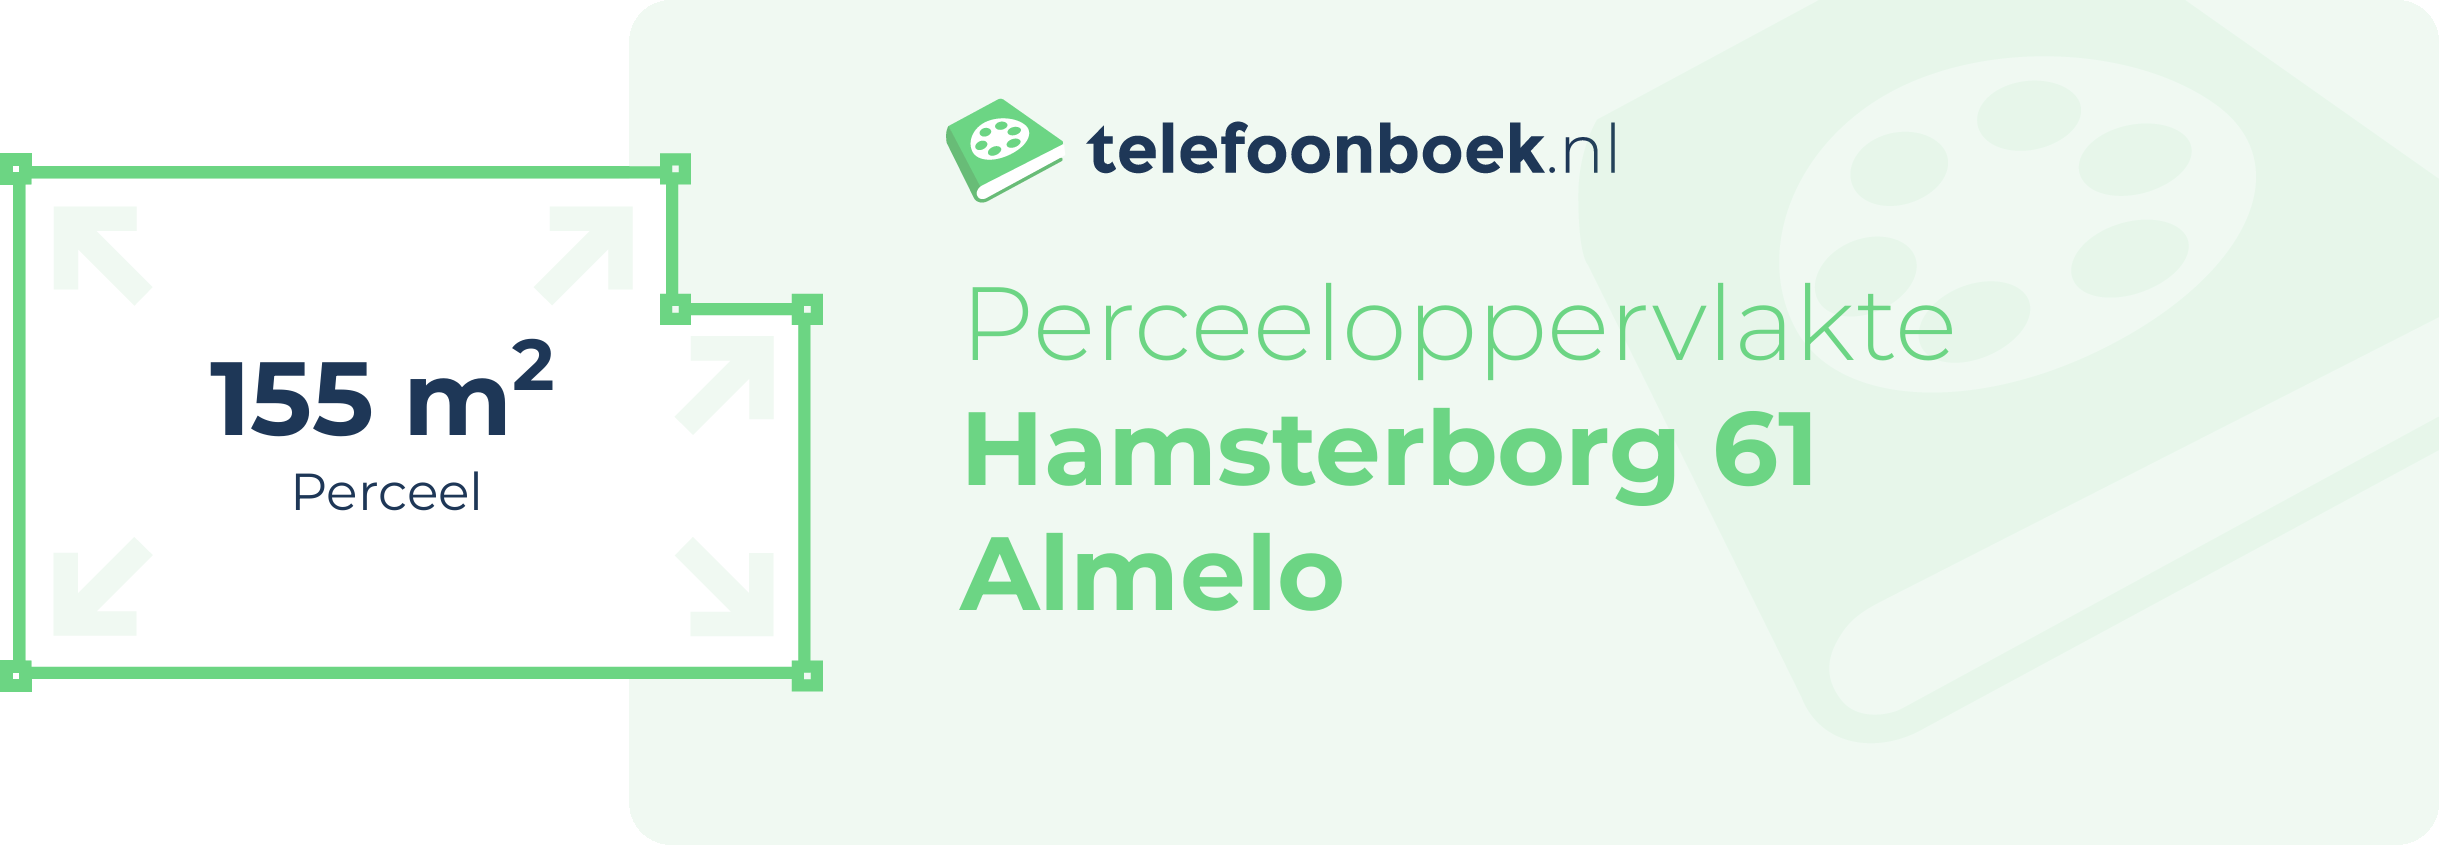 Perceeloppervlakte Hamsterborg 61 Almelo